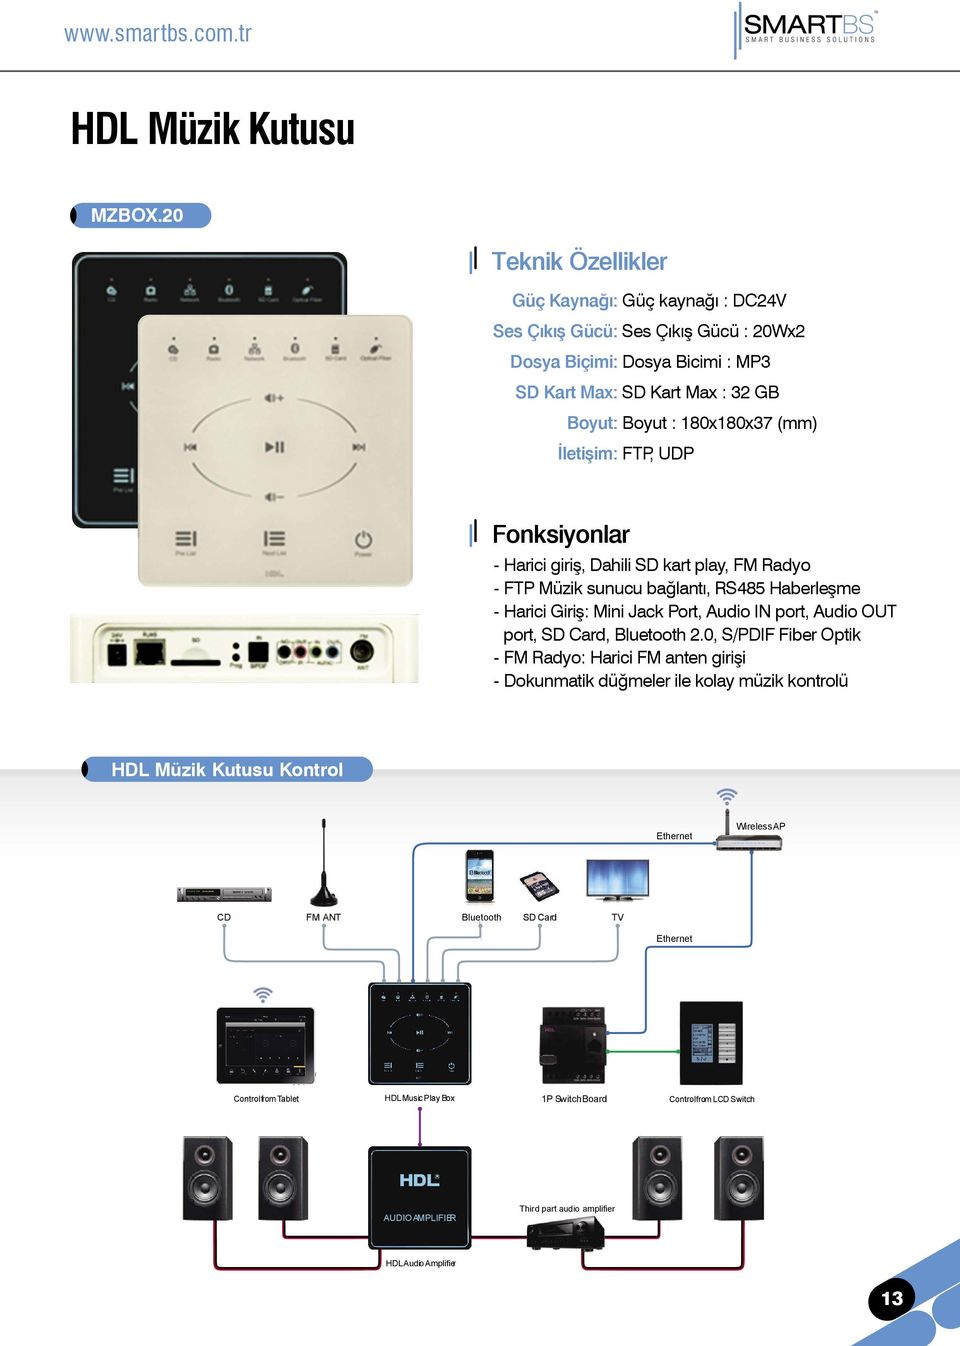 İletişim: FTP, UDP - Harici giriş, Dahili SD kart play, FM Radyo - FTP Müzik sunucu bağlantı, RS485 Haberleşme - Harici Giriş: Mini Jack Port, Audio IN port, Audio OUT port, SD